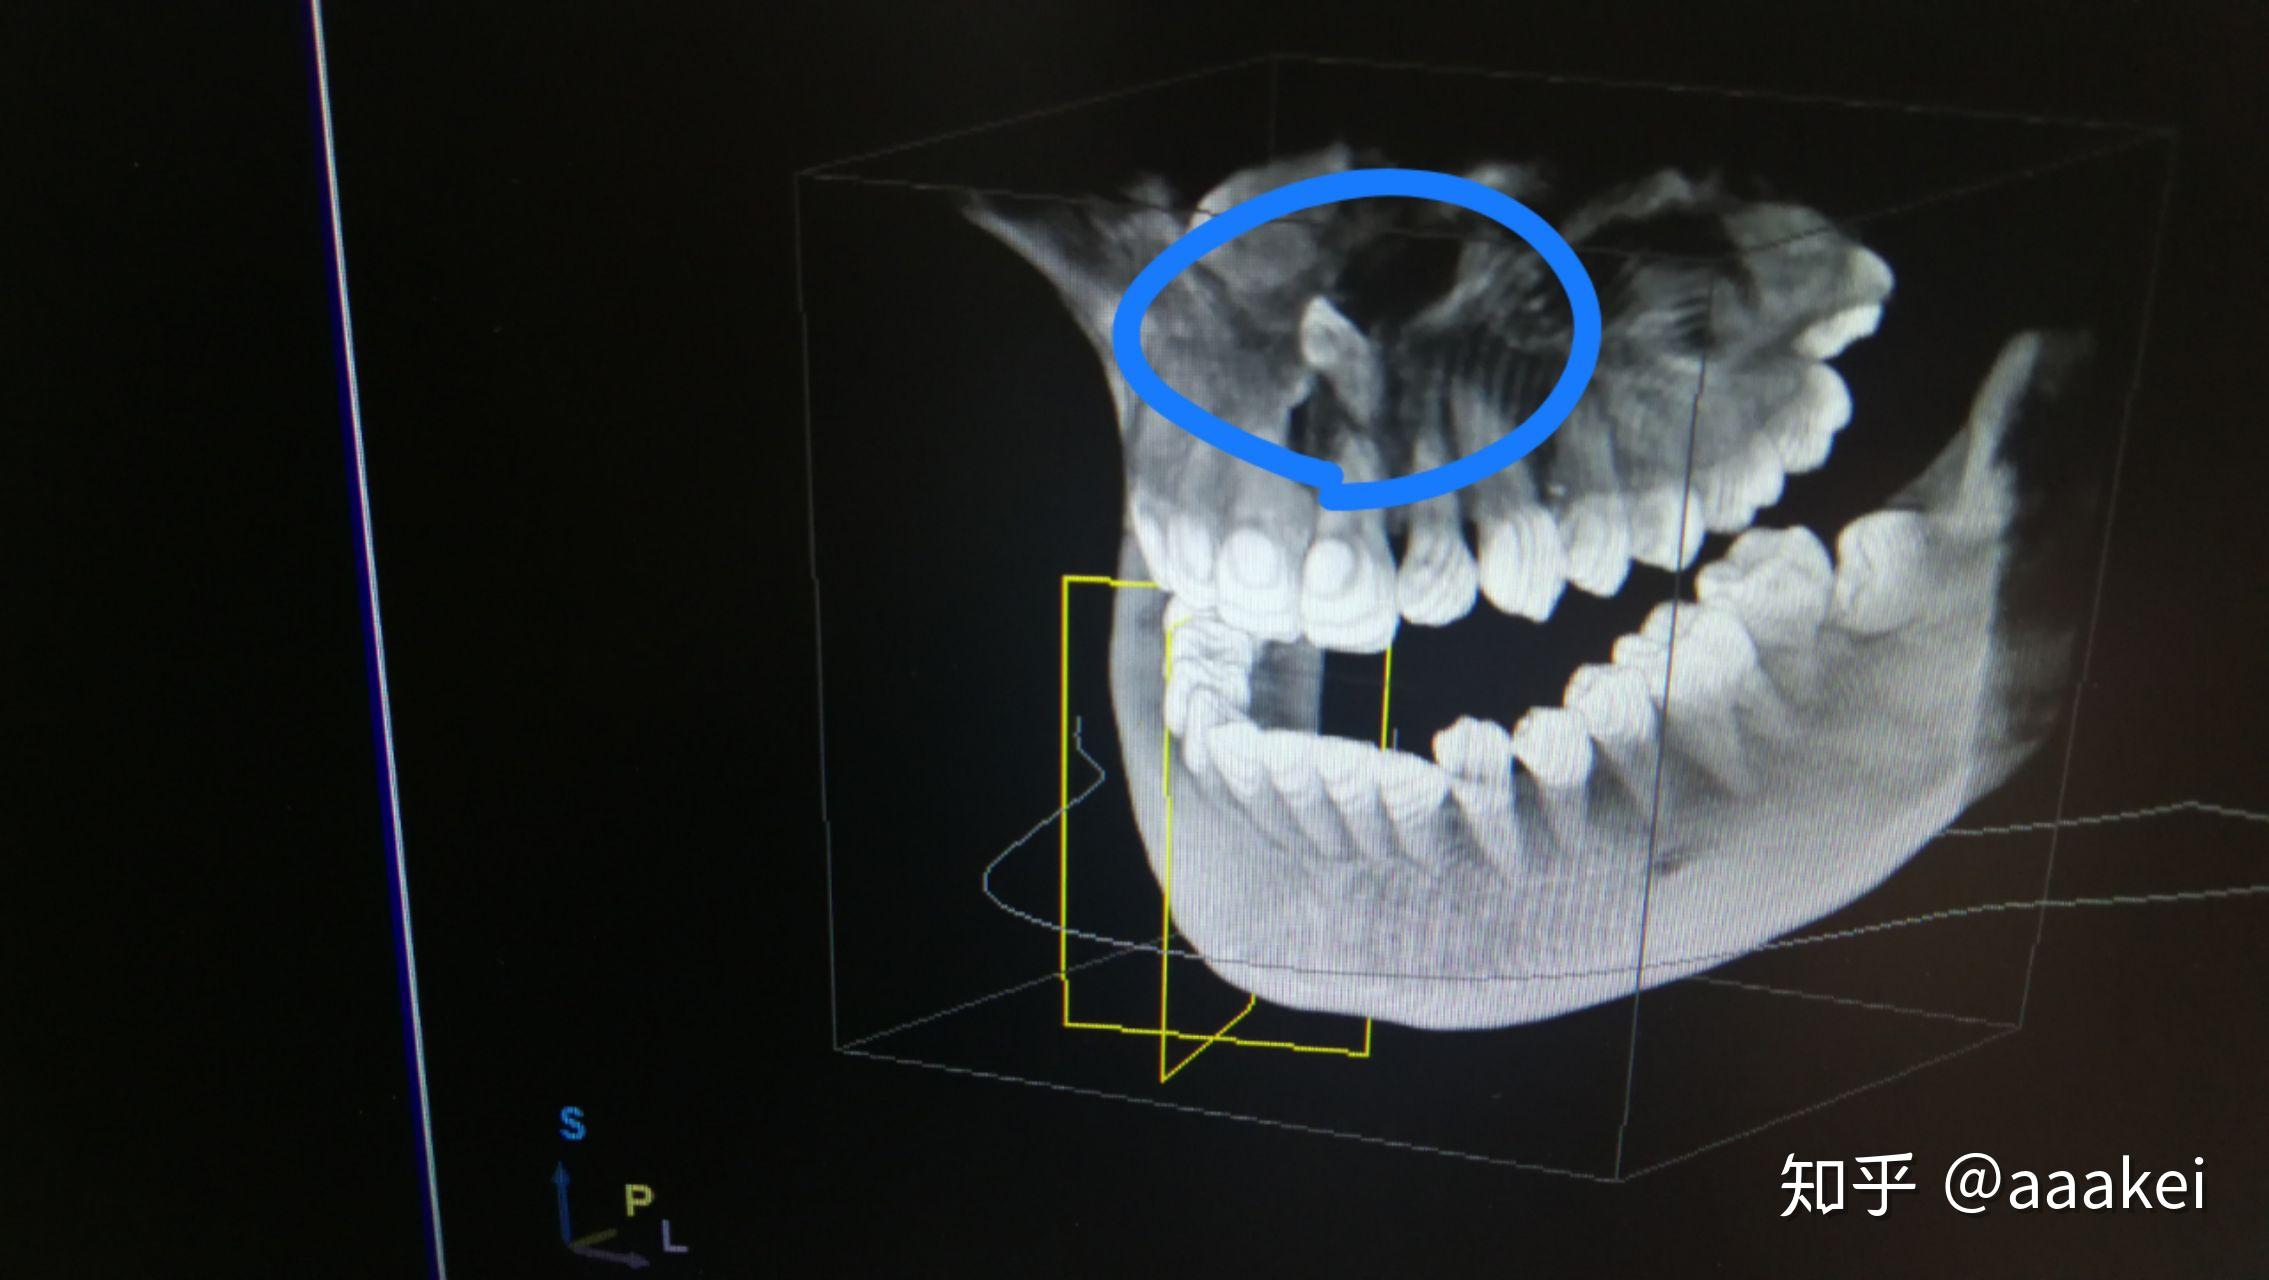 多生齿,女朋友矫正牙齿后拍片偶然发现上颚与鼻腔之间有一颗多生齿